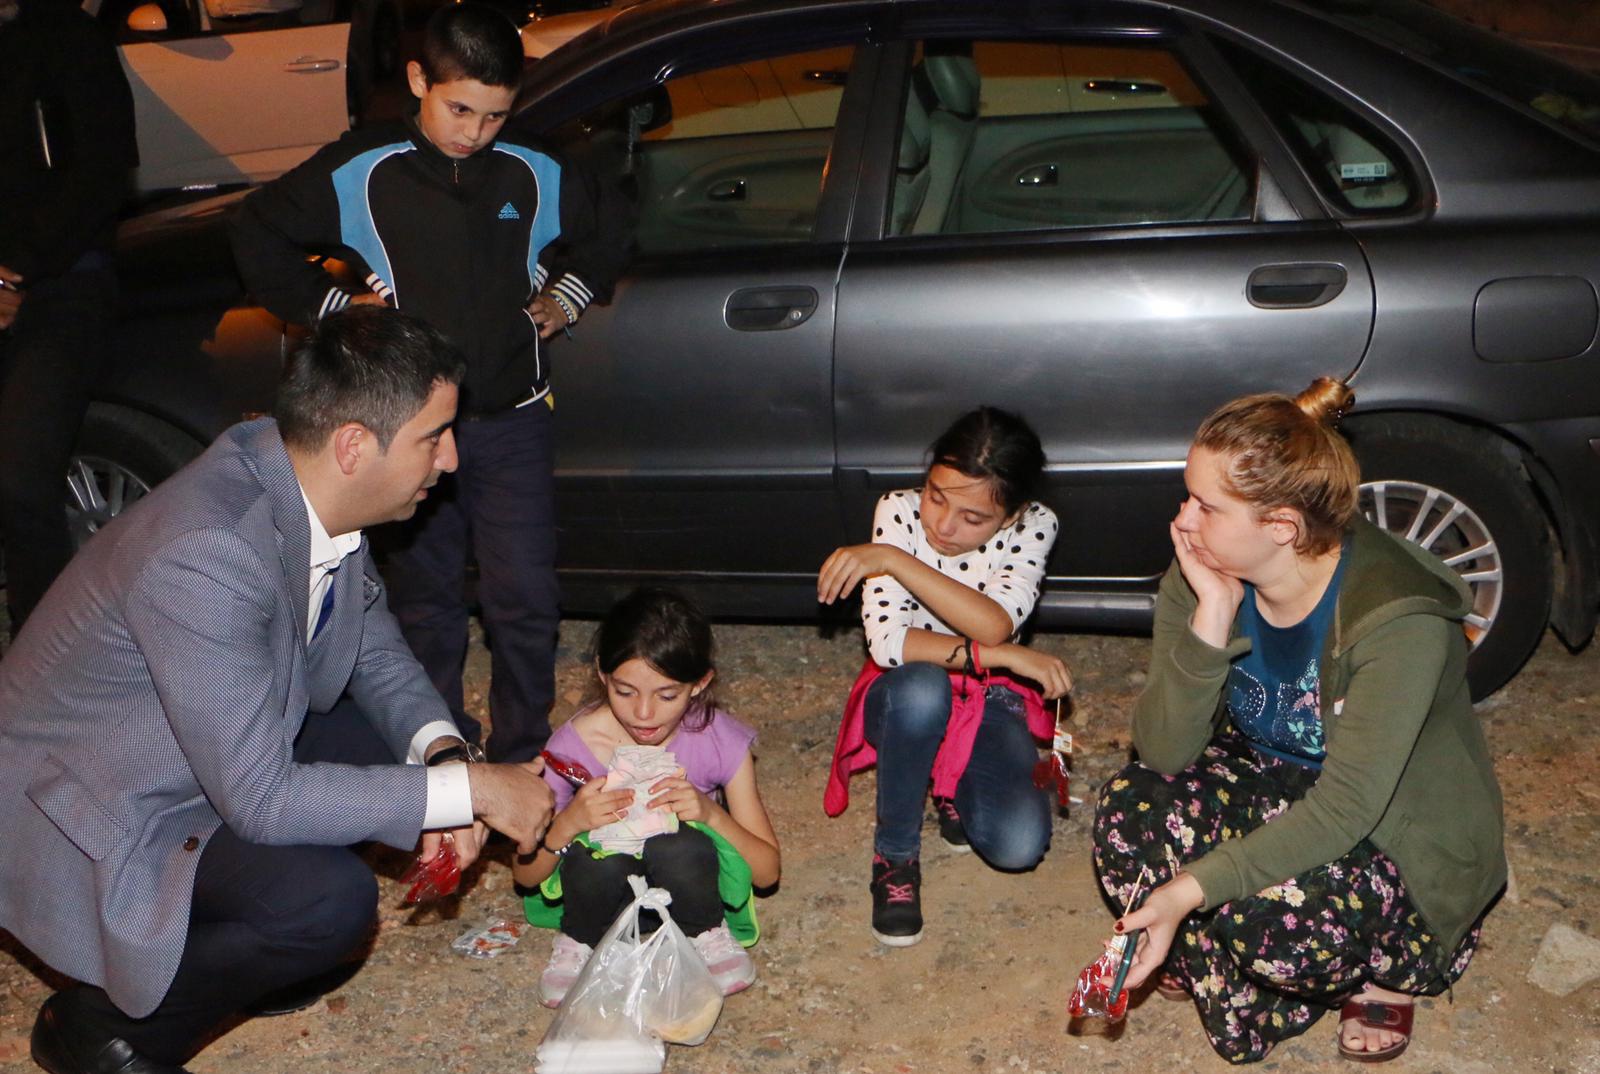 Kartal Belediyesi, Yaşanan Deprem Sonrası Vatandaşlardan Gelen Aramalar İçin Kriz Masası Kurdu   